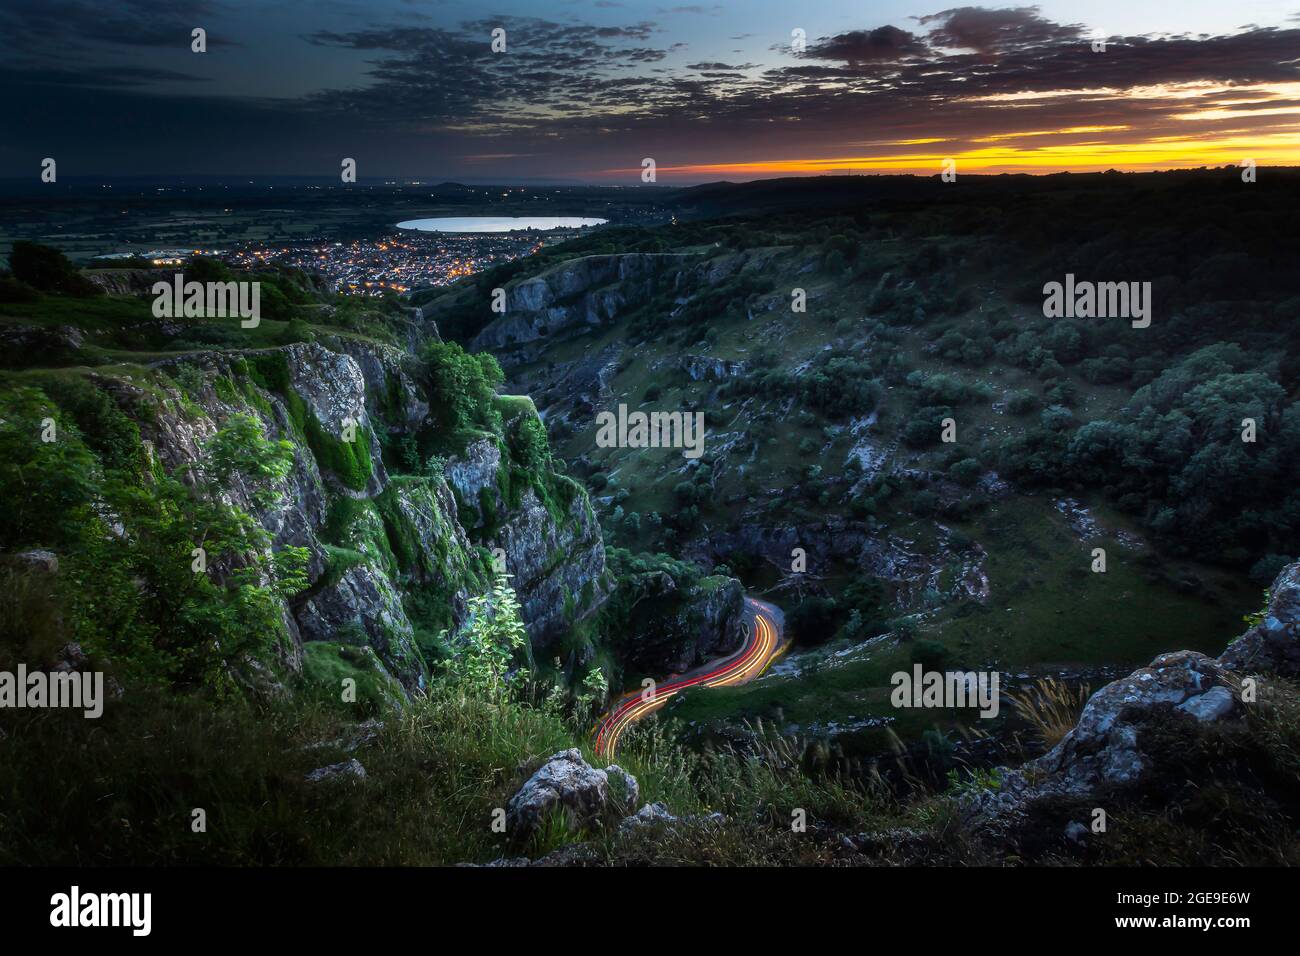 Soirée dans la gorge de Cheddar, Somerset, Royaume-Uni. Paysage de l'heure bleue avec une lueur orange sur ciel nuageux, essais de lumière de voiture et lumières de ville en arrière-plan Banque D'Images